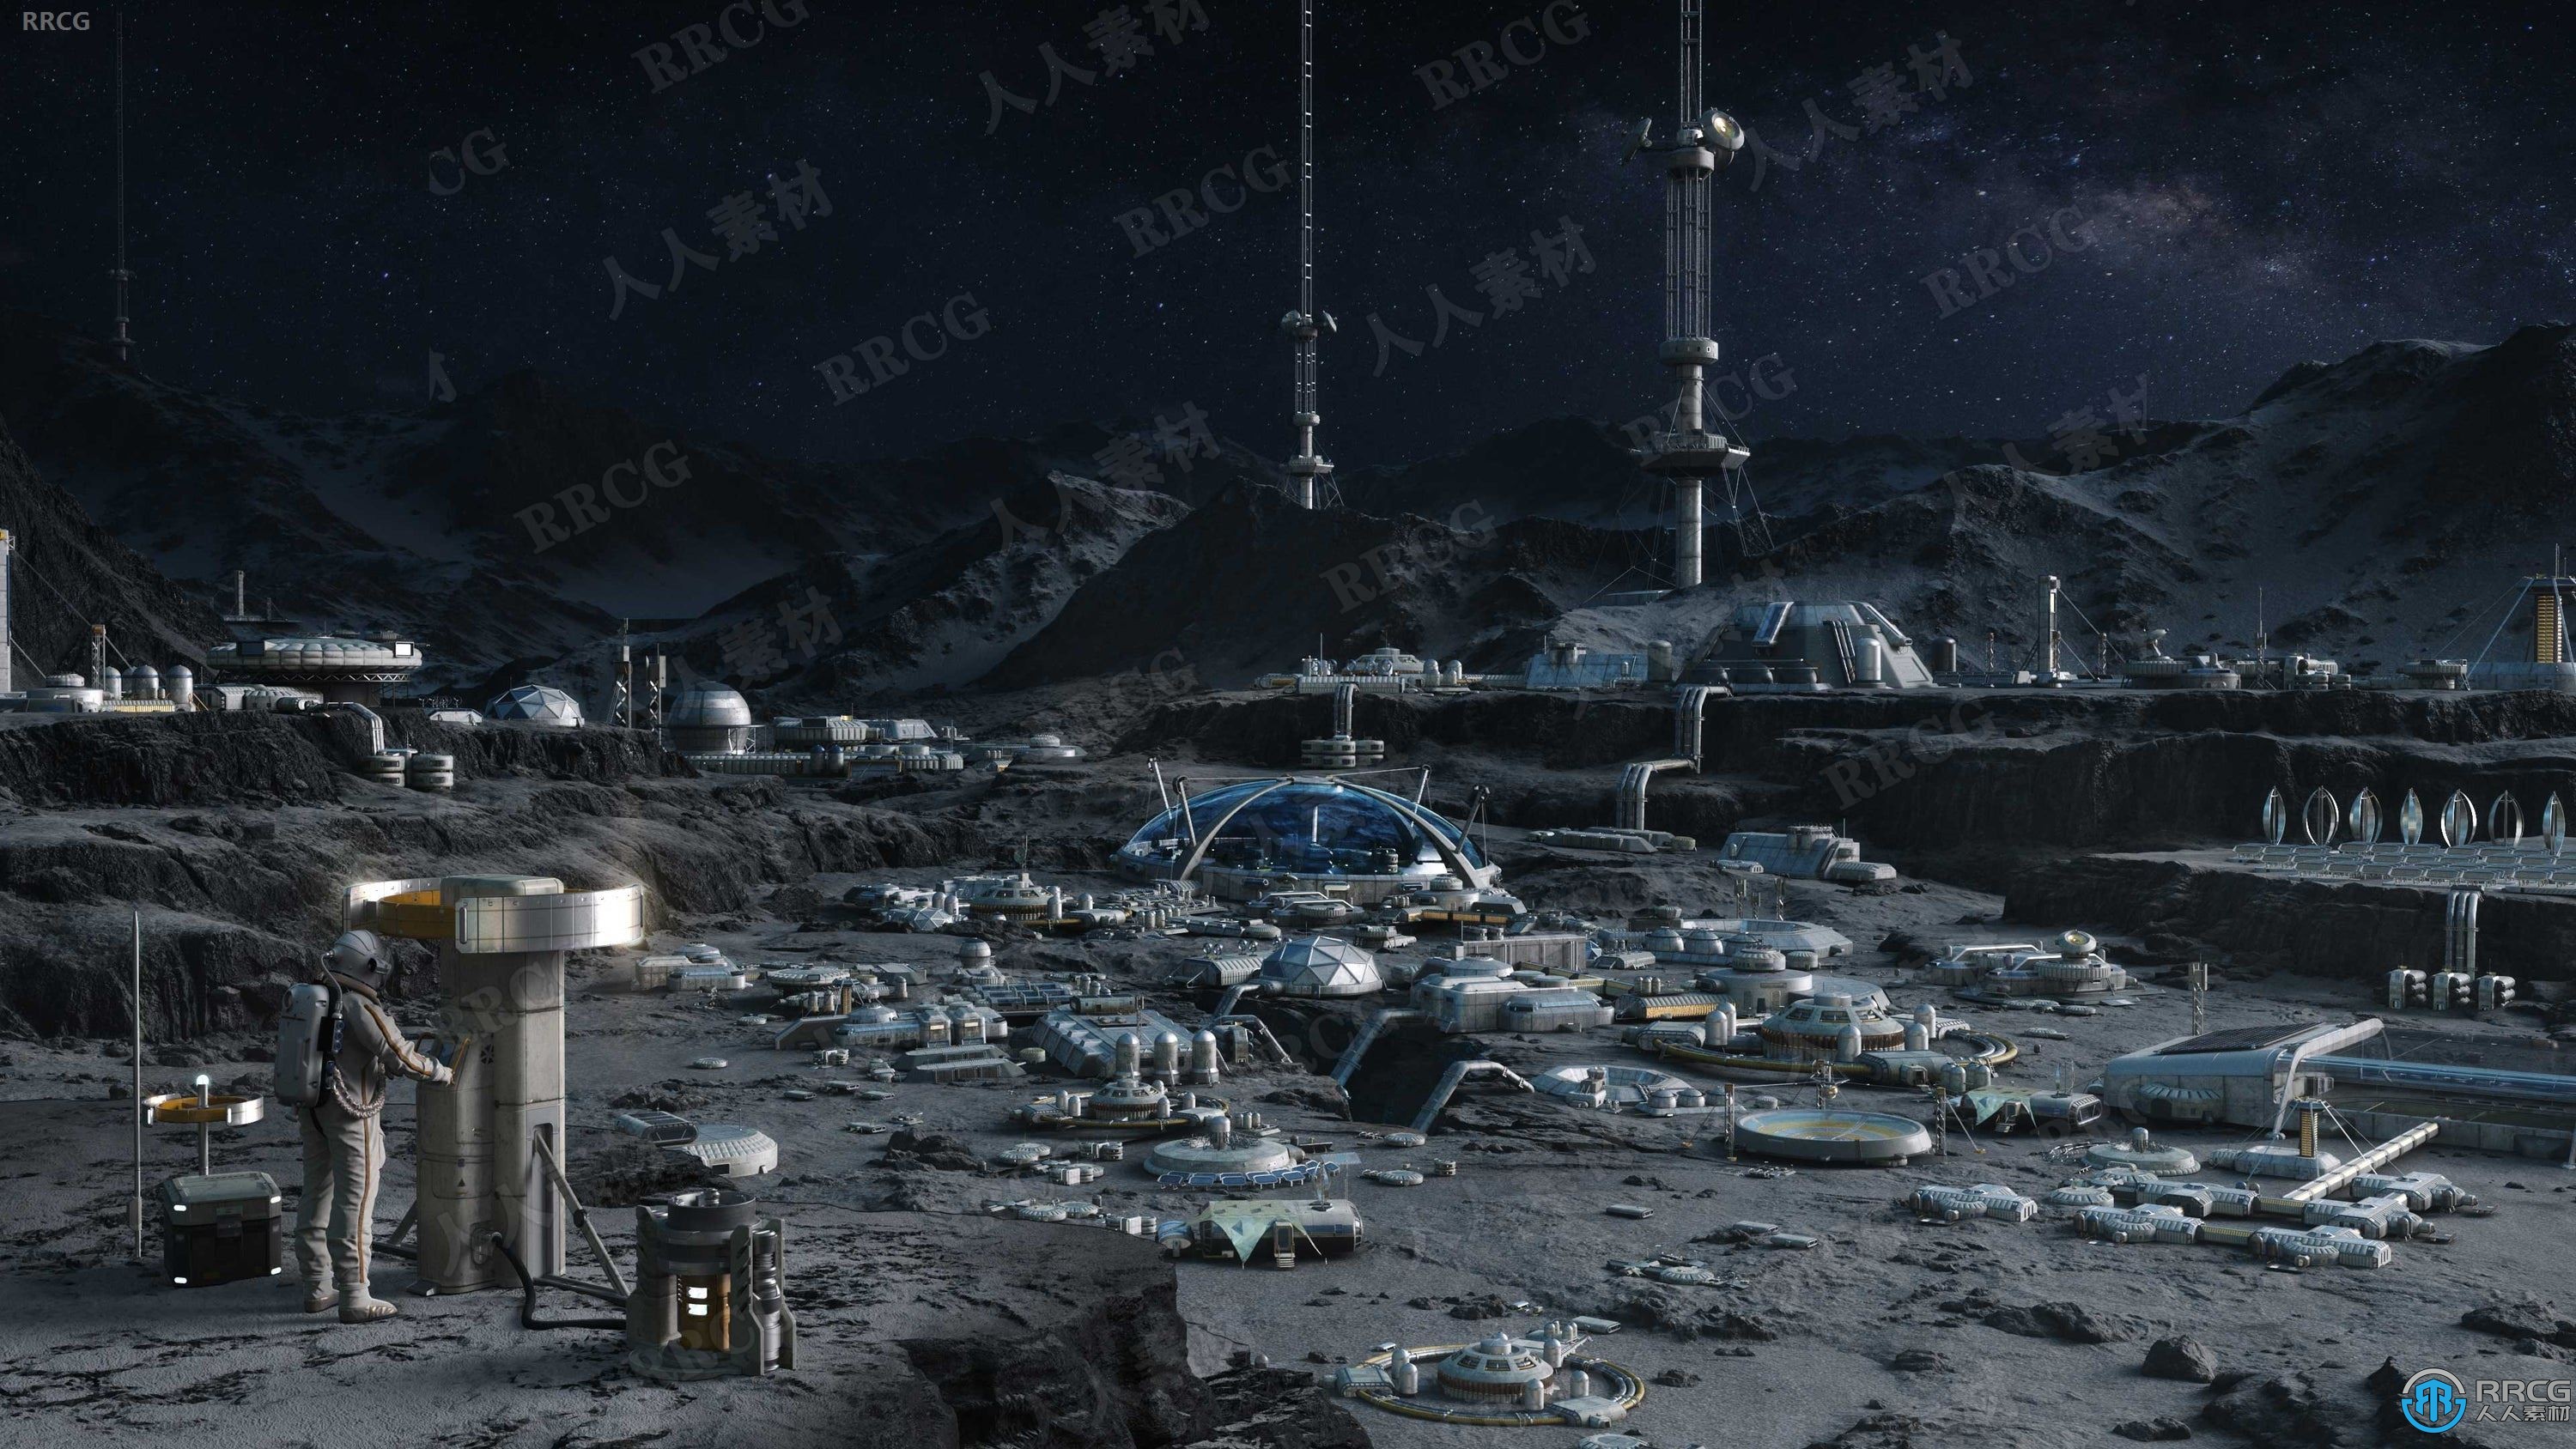 月球基地太空堡垒建筑景观完整细节3D模型合集